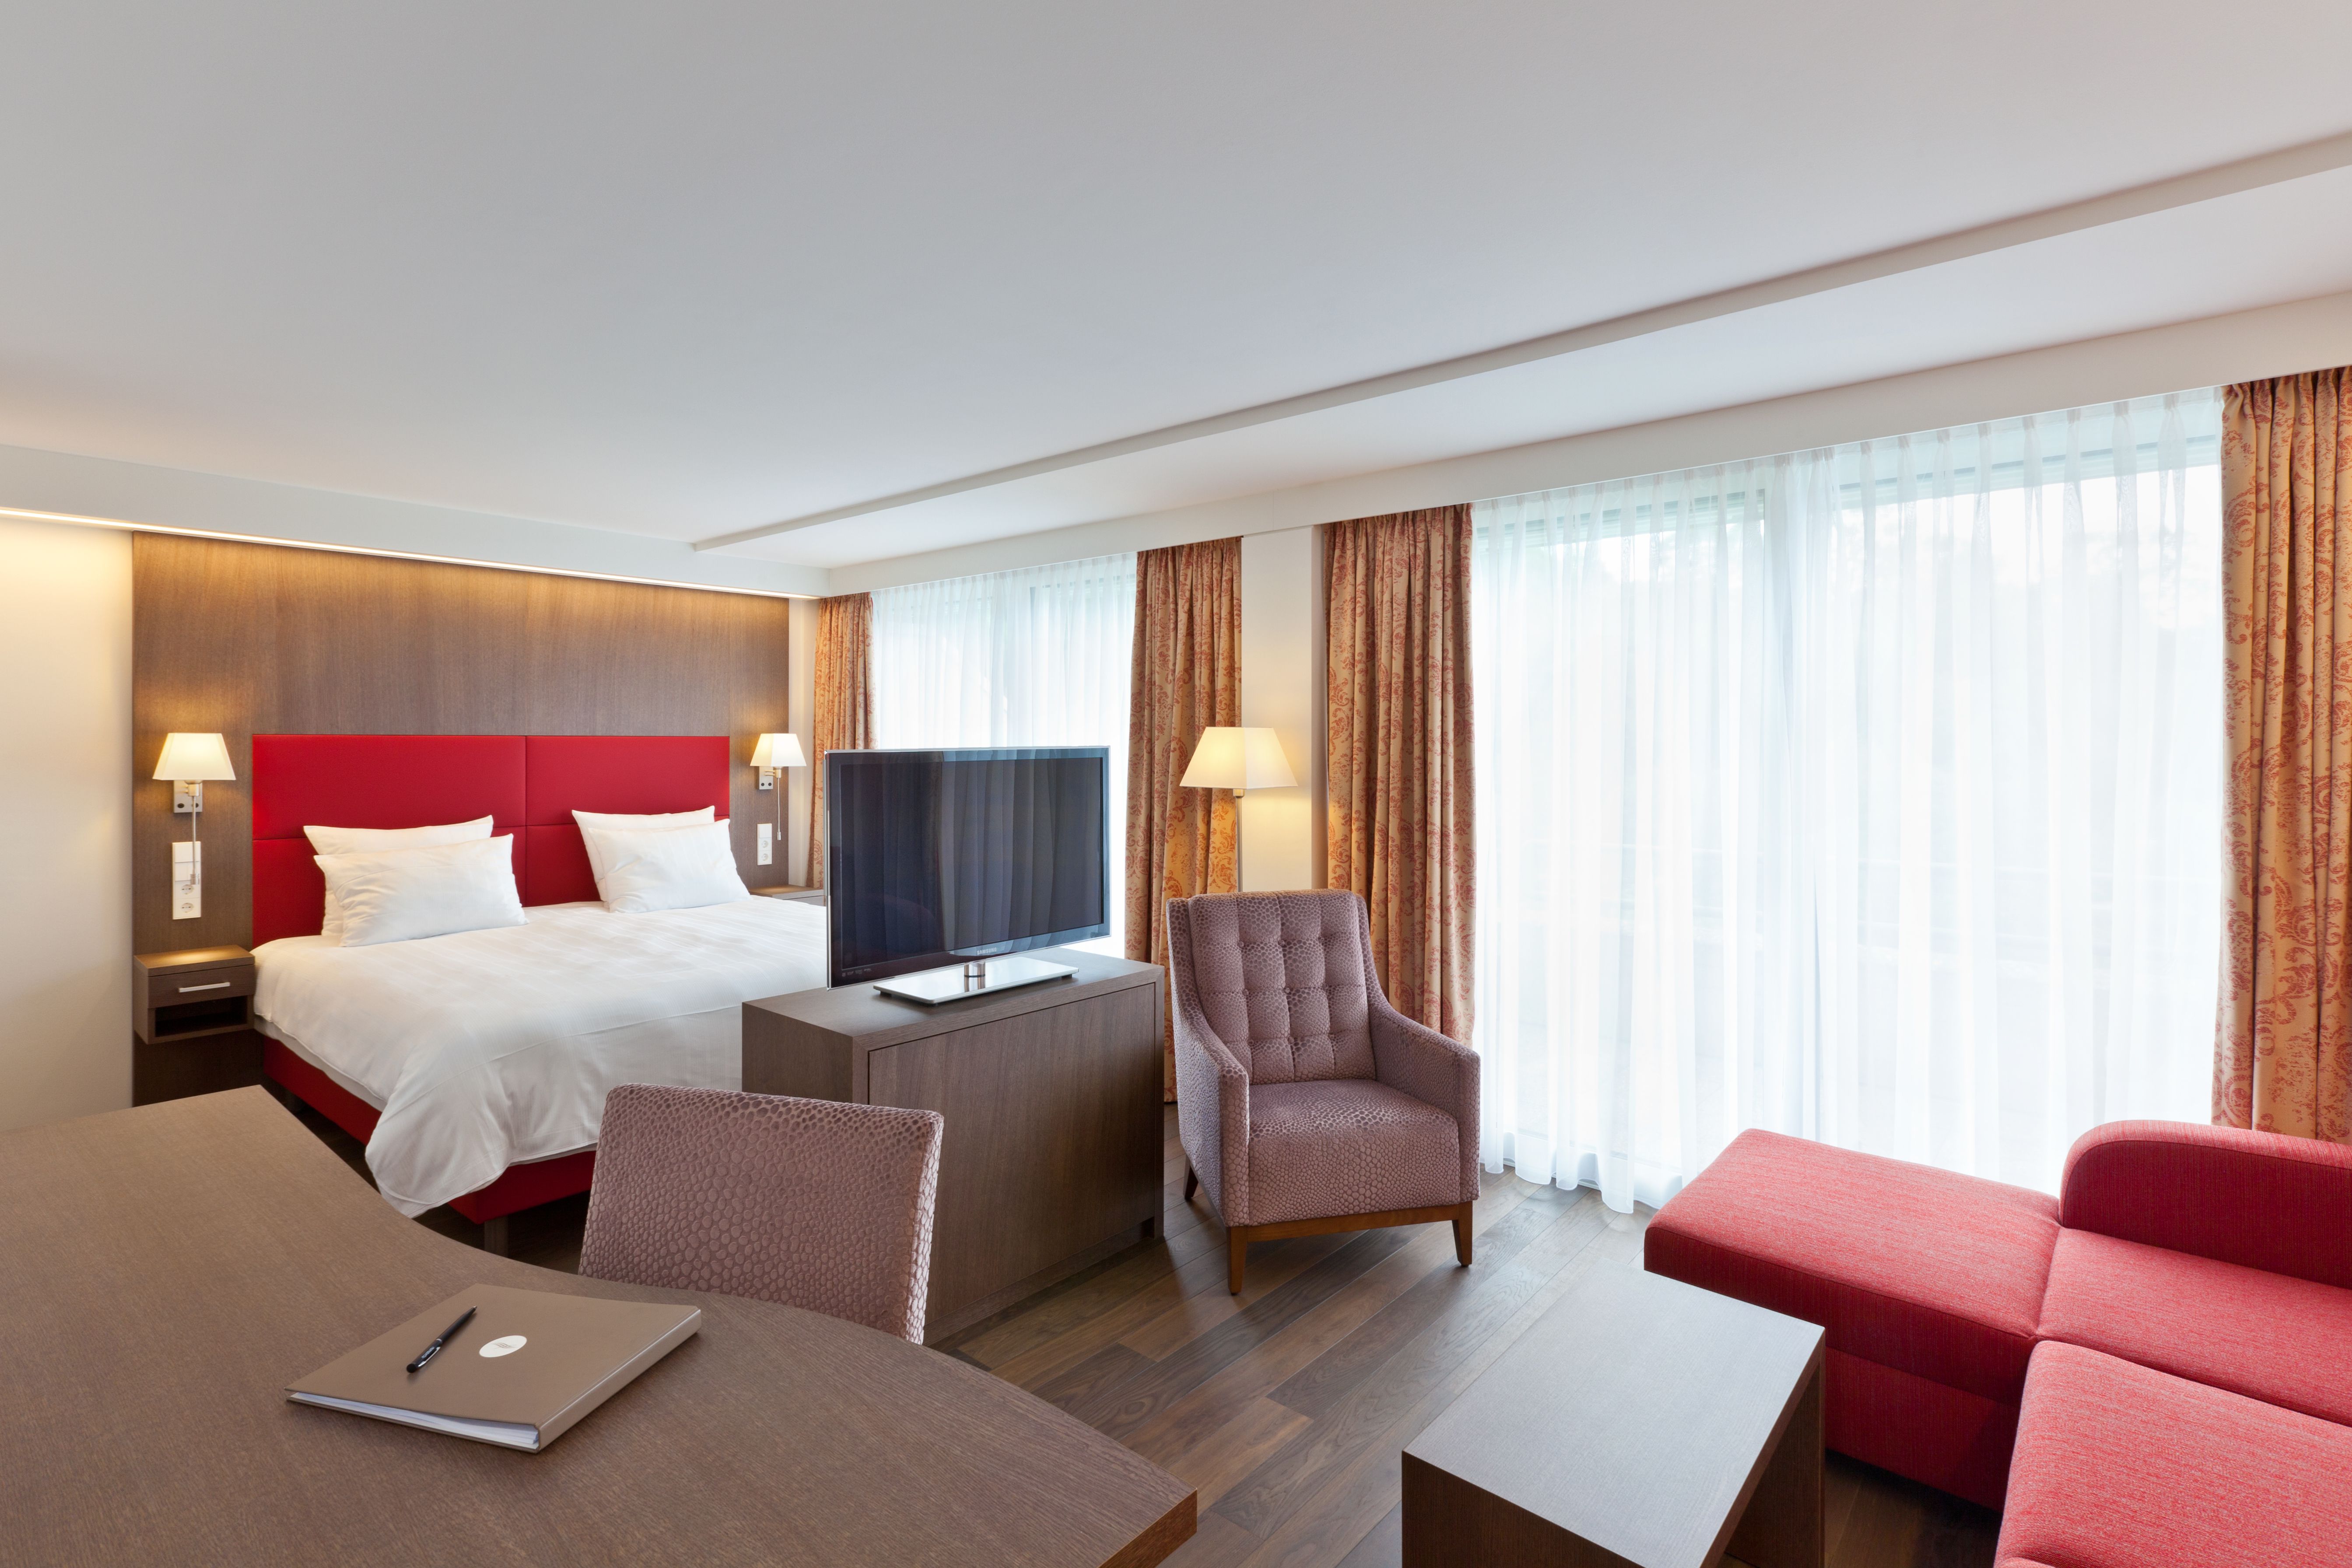 MDT_HOTEL_Mondorf Parc Hotel - Suite Loft_2015_25_HQ